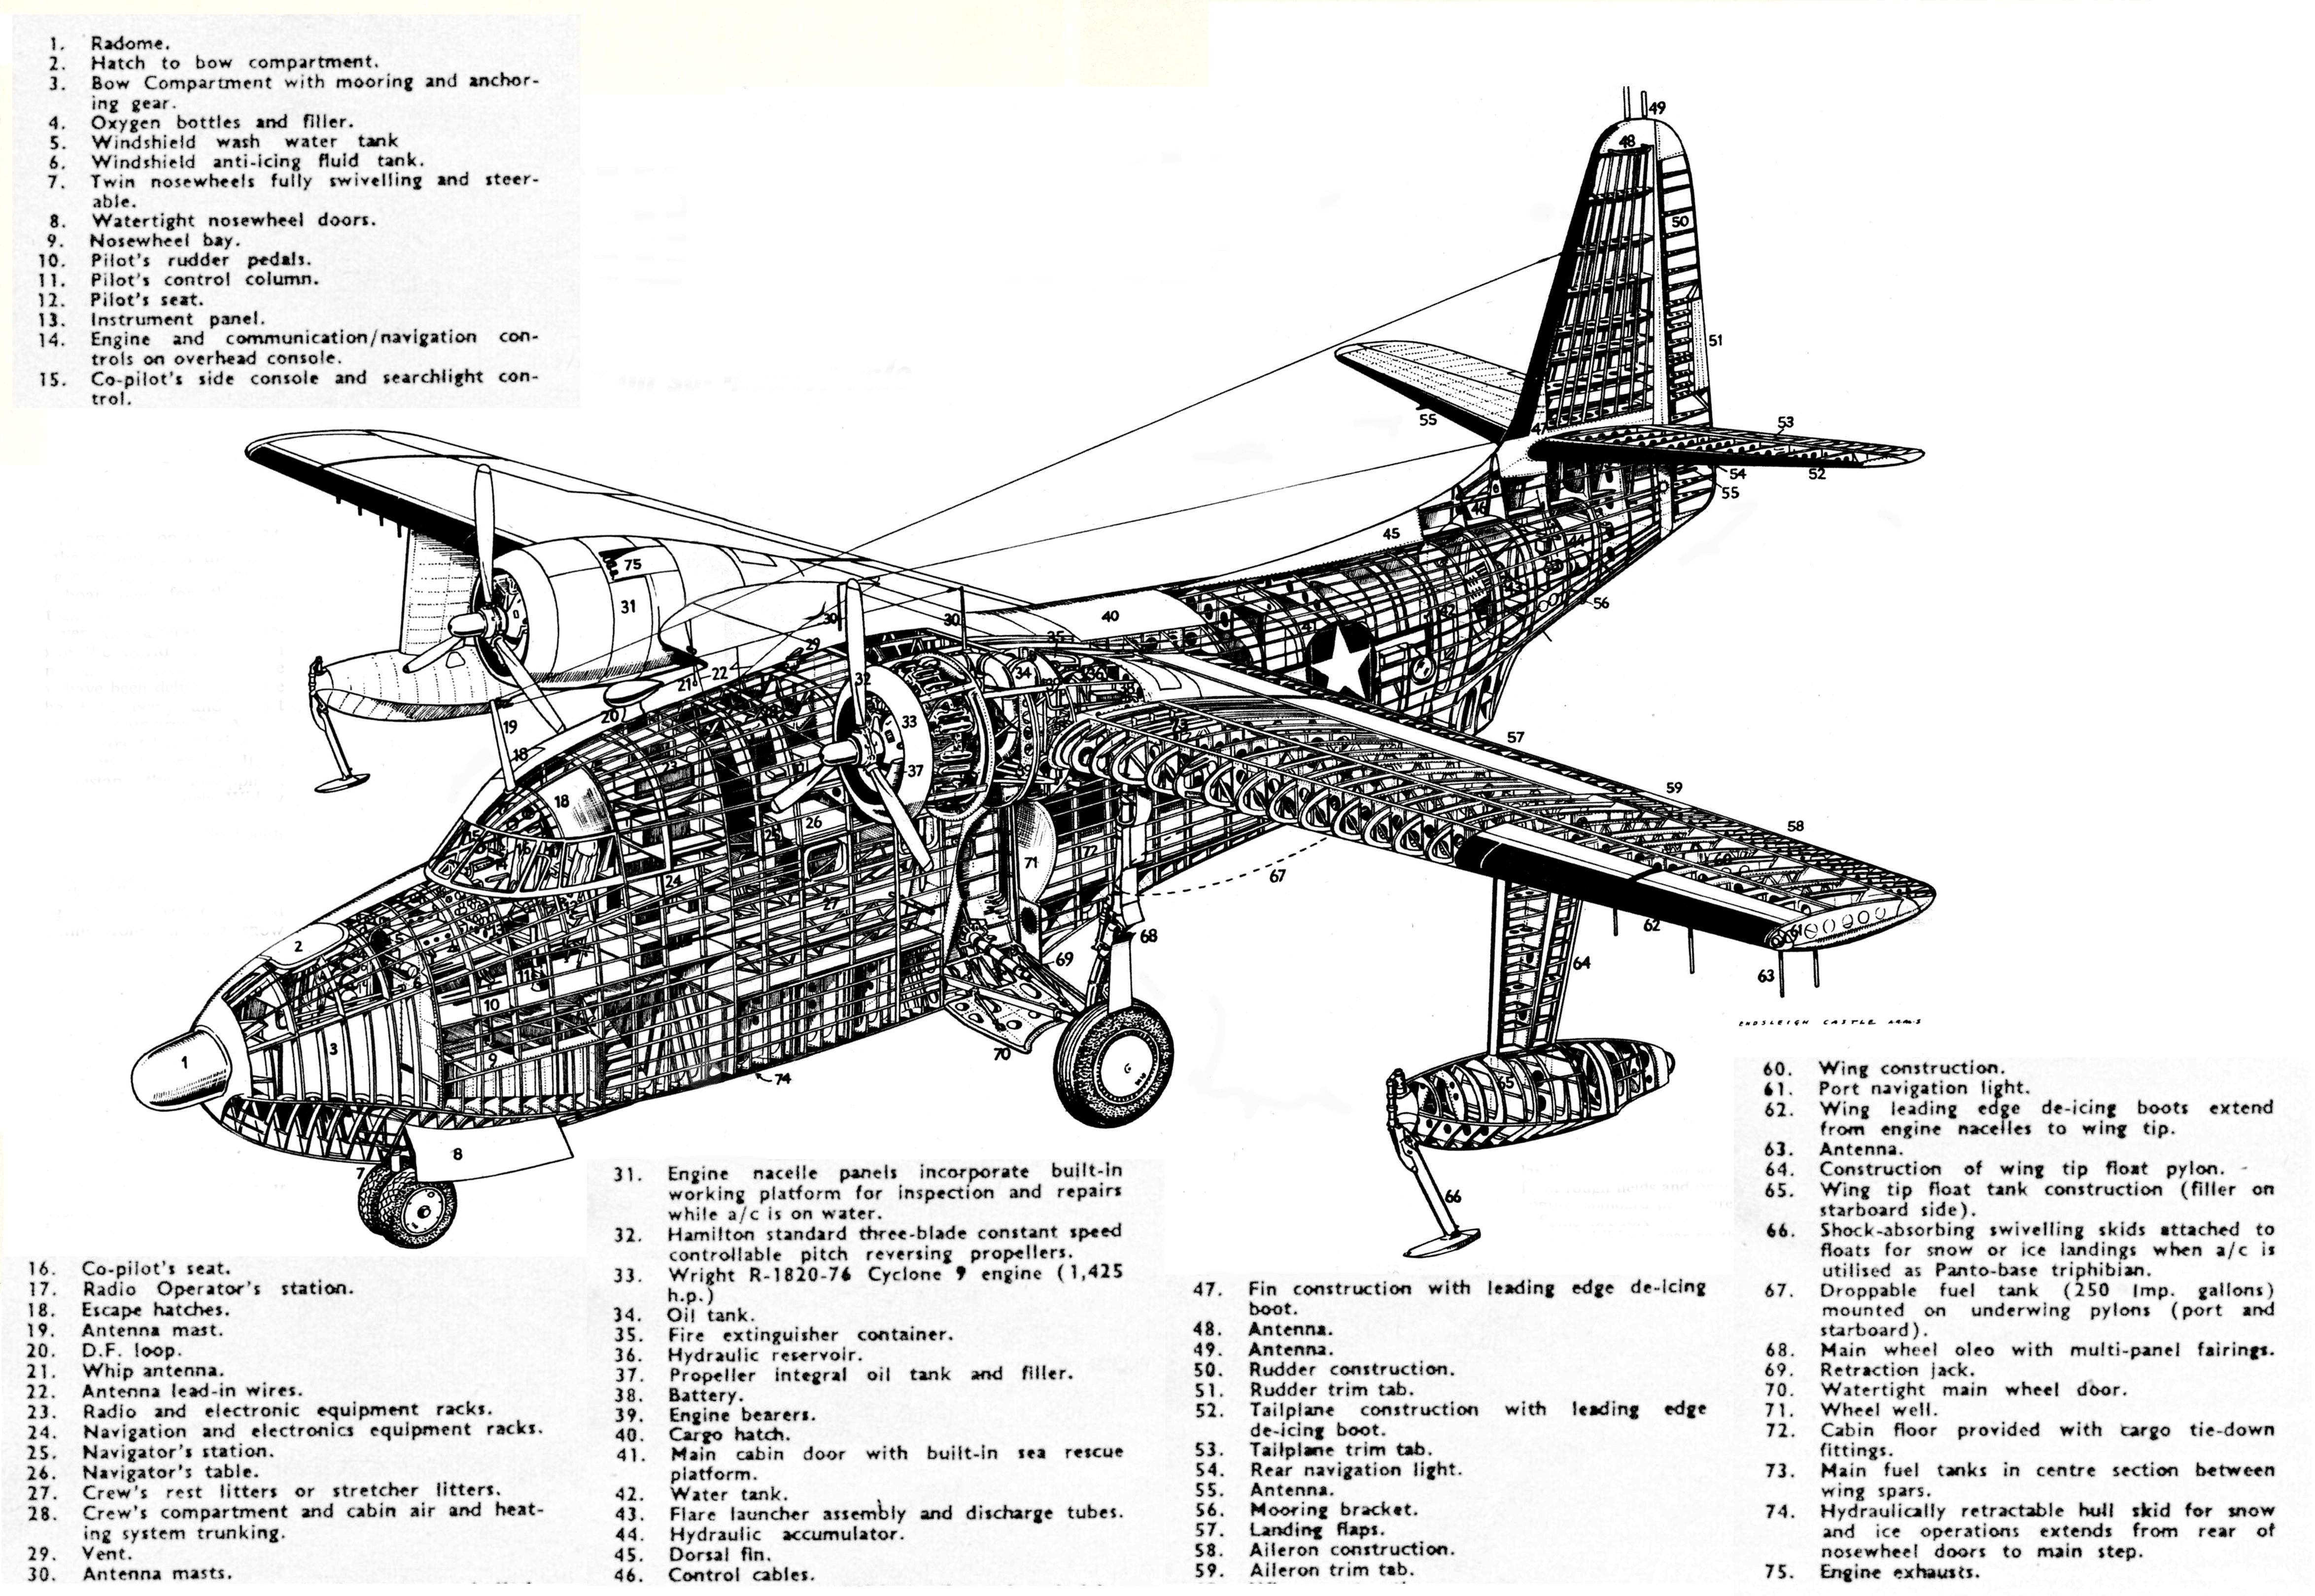 grummansa16bensleighcas | Aircraft of World War II - WW2Aircraft.net Forums